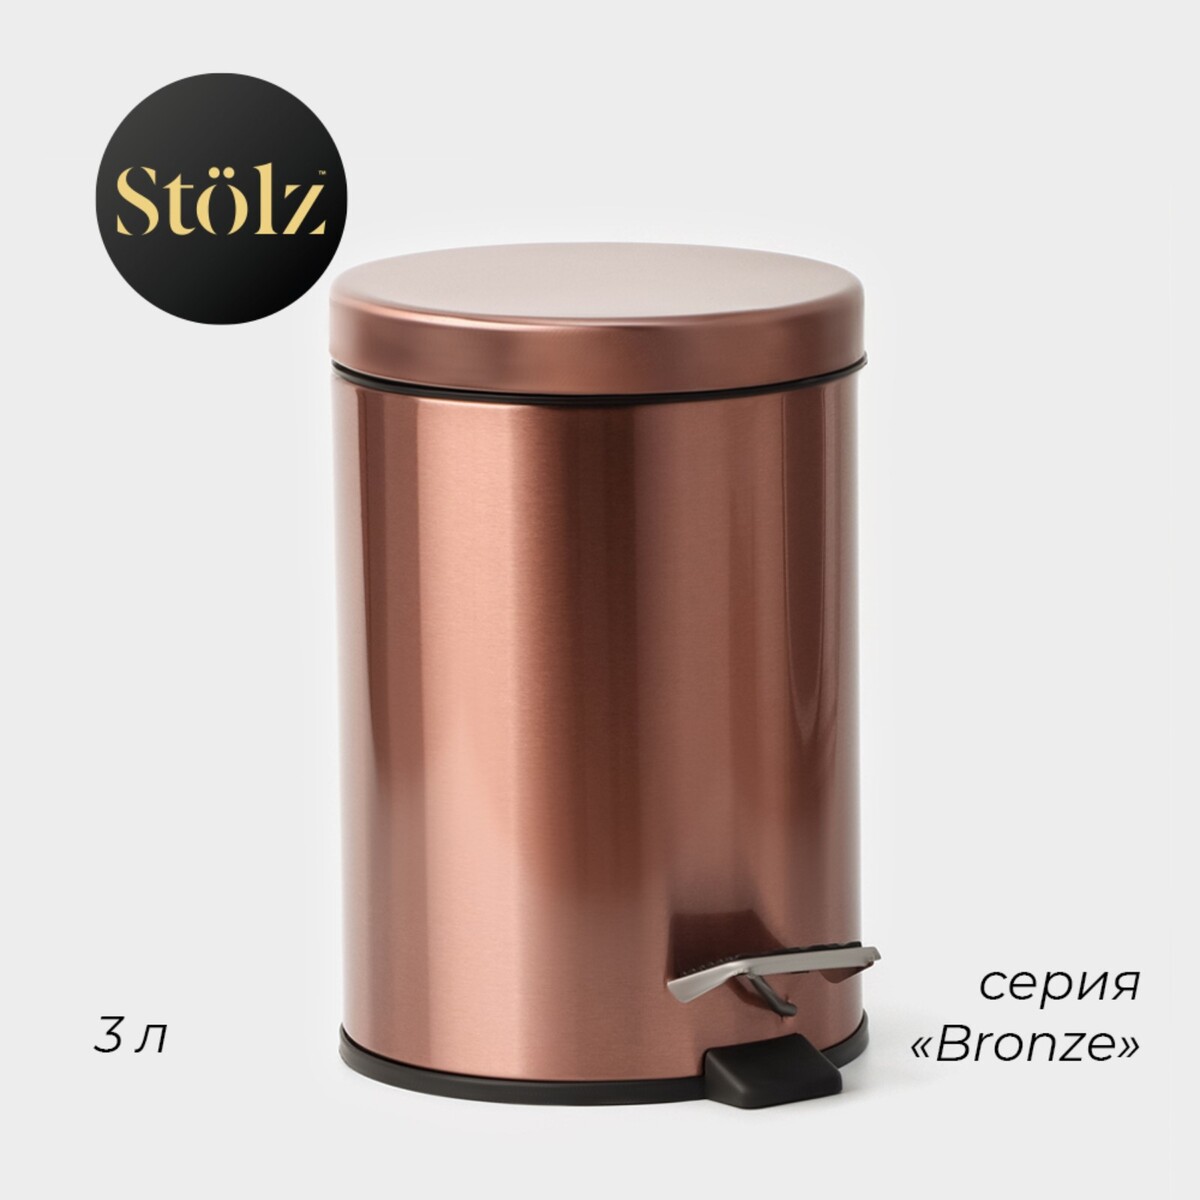 Ведро мусорное с педалью штольц stölz, 3 л, нержавеющая сталь, цвет бронза Stölz